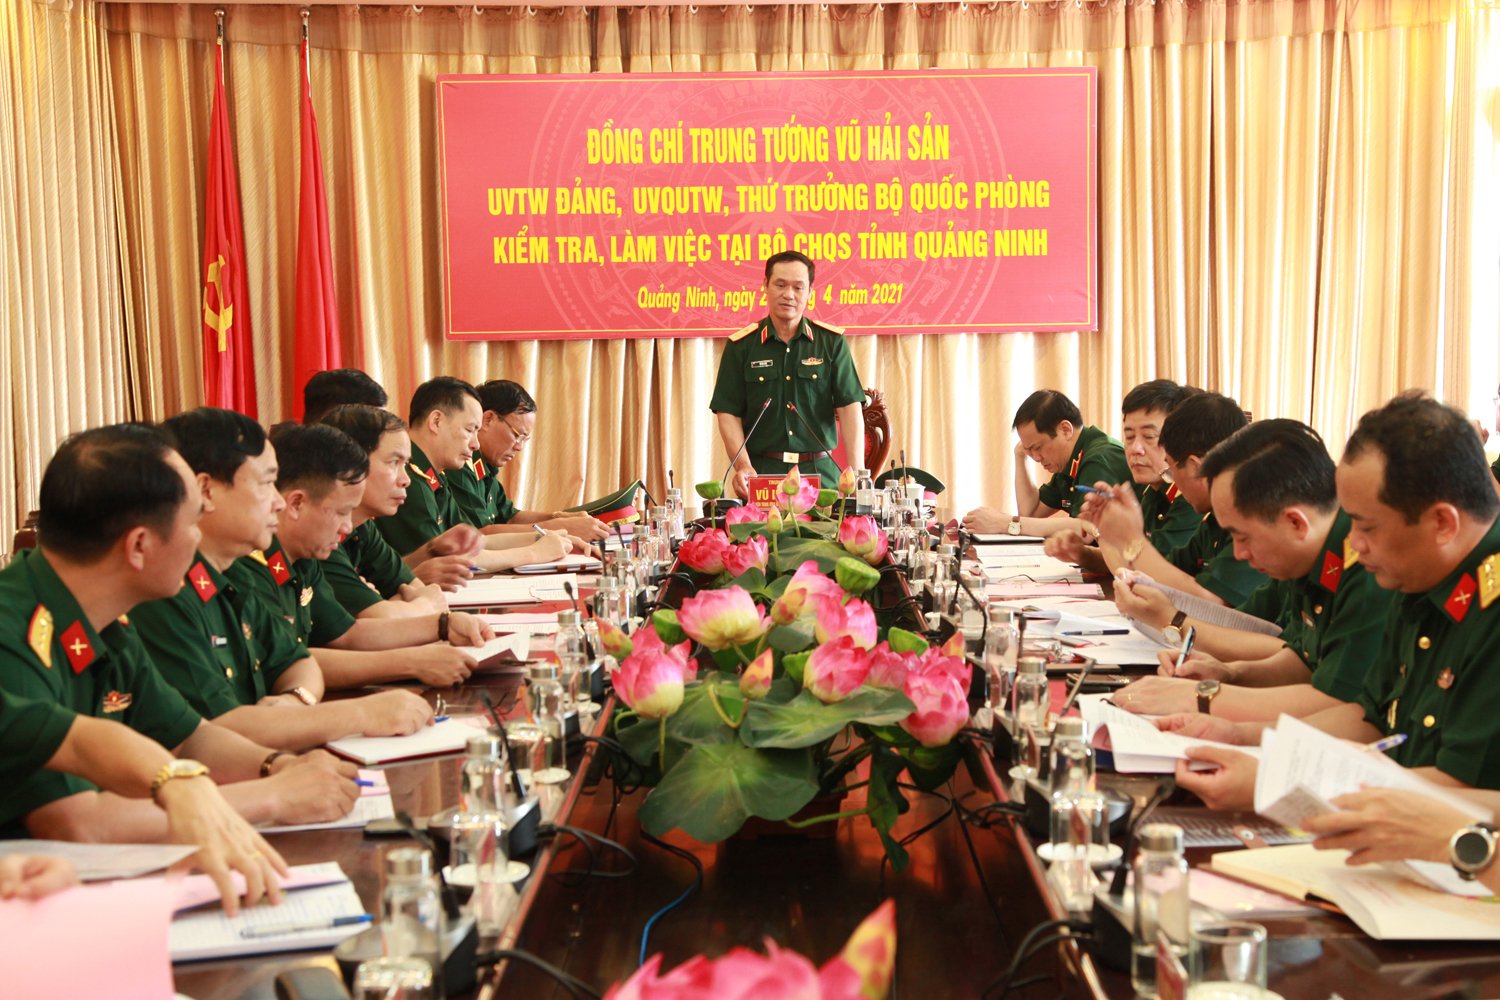 Trung tướng Vũ Hải Sản, Ủy viên Trung ương Đảng, Ủy viên Quân ủy Trung ương, Thứ trưởng Bộ Quốc phòng, phát biểu kết luận kiểm tra. 